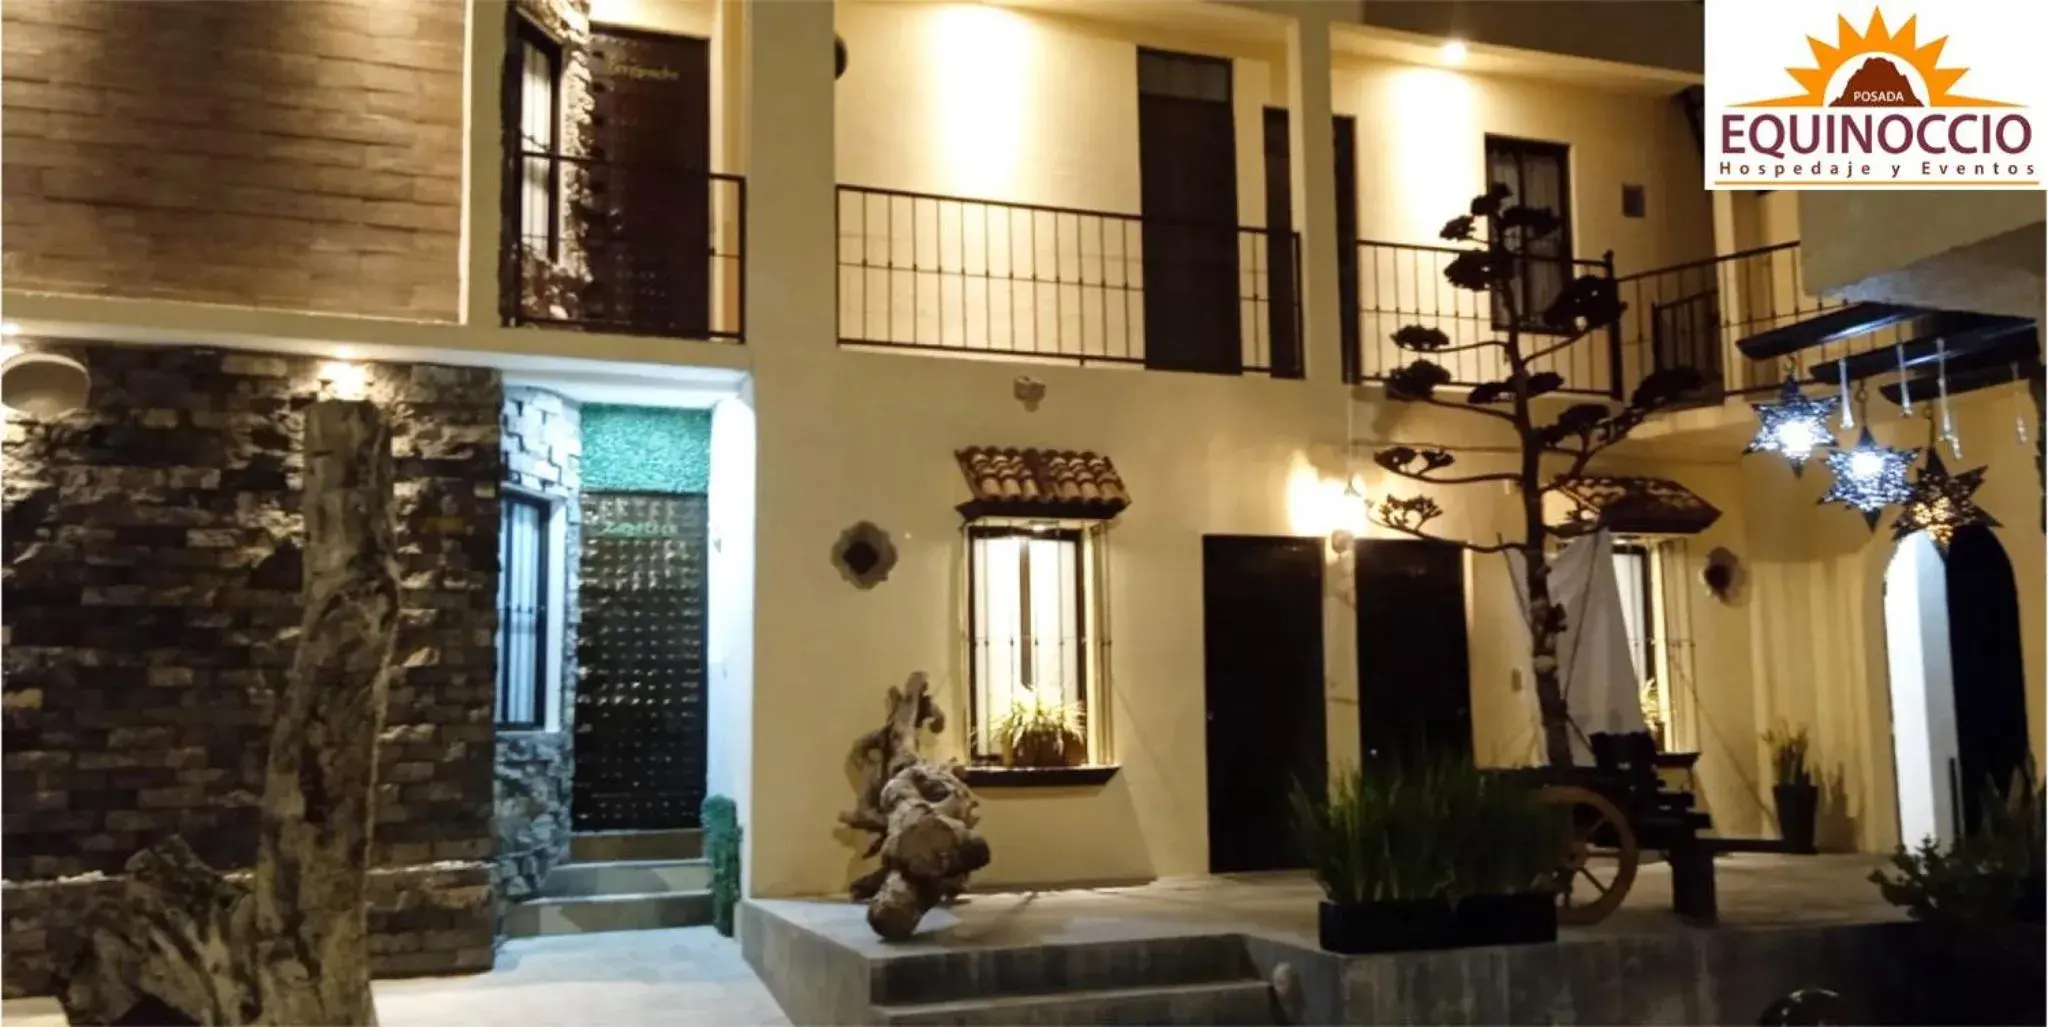 Property building in Posada Equinoccio